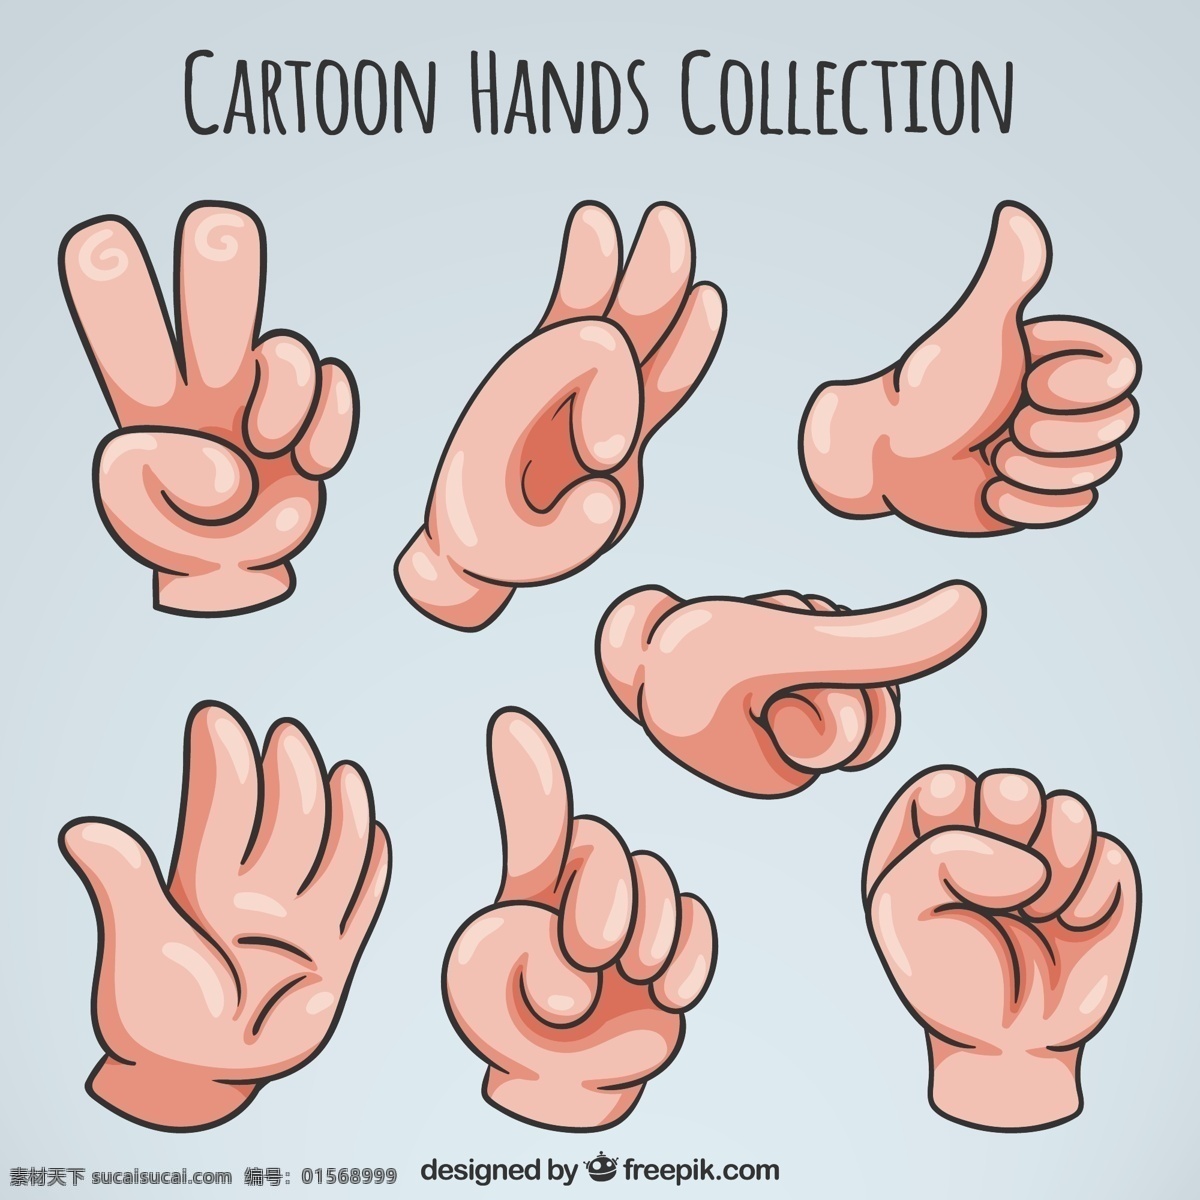 卡通手包 手 卡通 手画 符号 交流 绘画 语言 表达 包装 草图 身体零件 零件 手语 聋人 手势 肢体语言